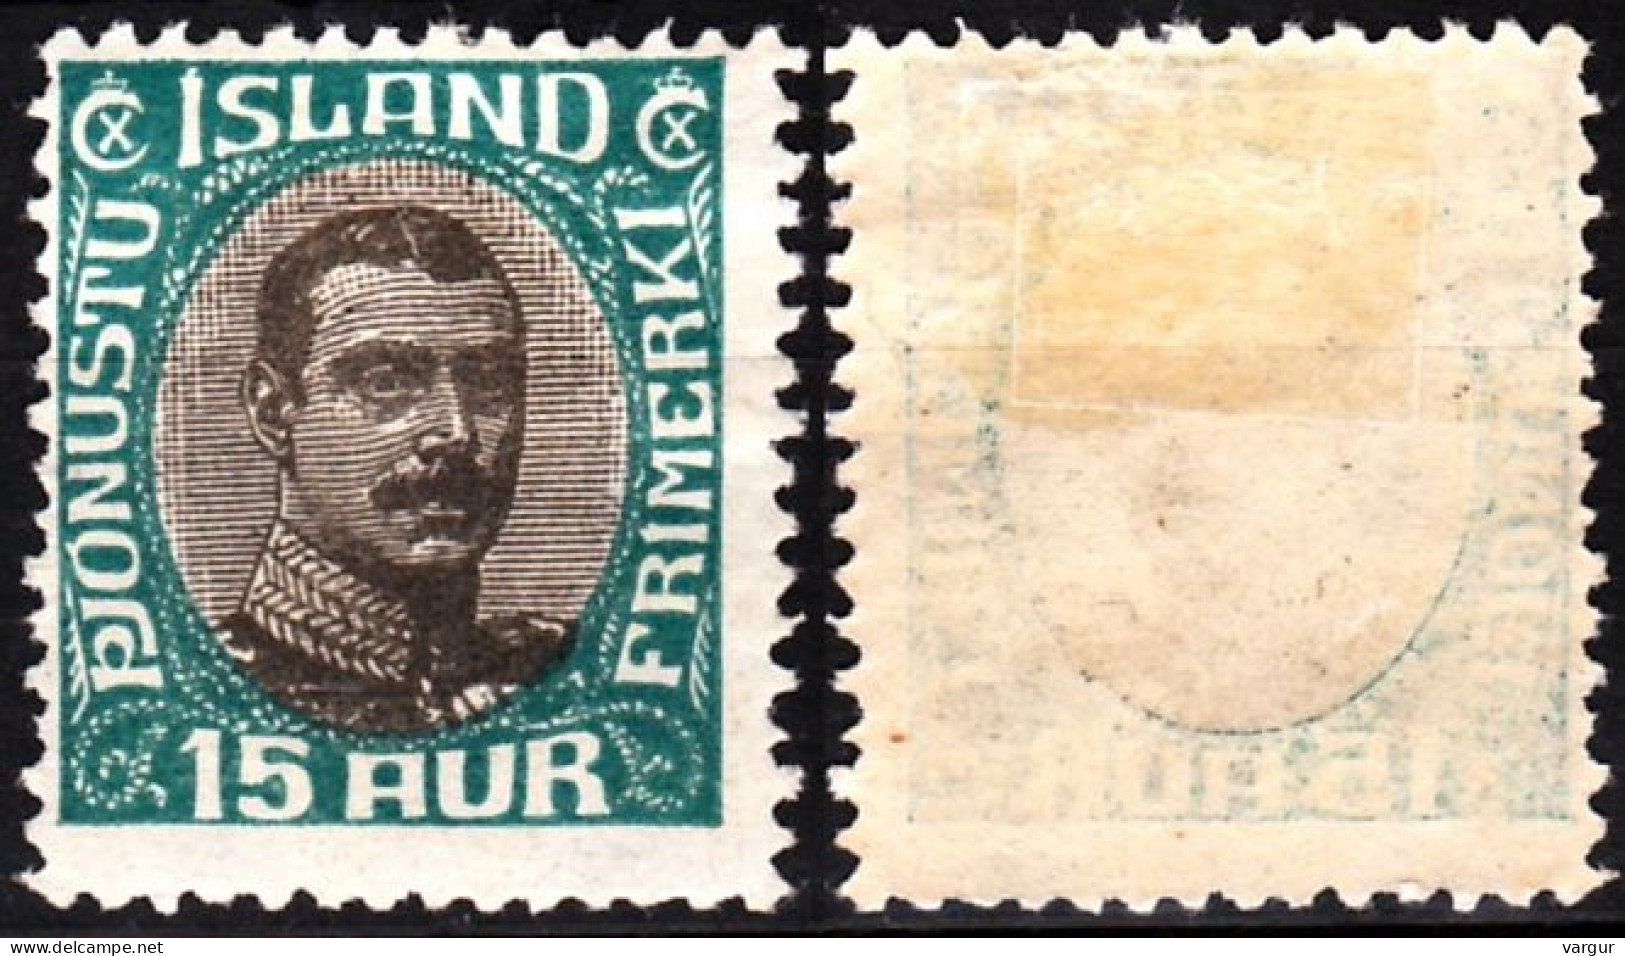 ICELAND / ISLAND Postage Due 1920 King Christian X, 15Aur, MH - Dienstmarken